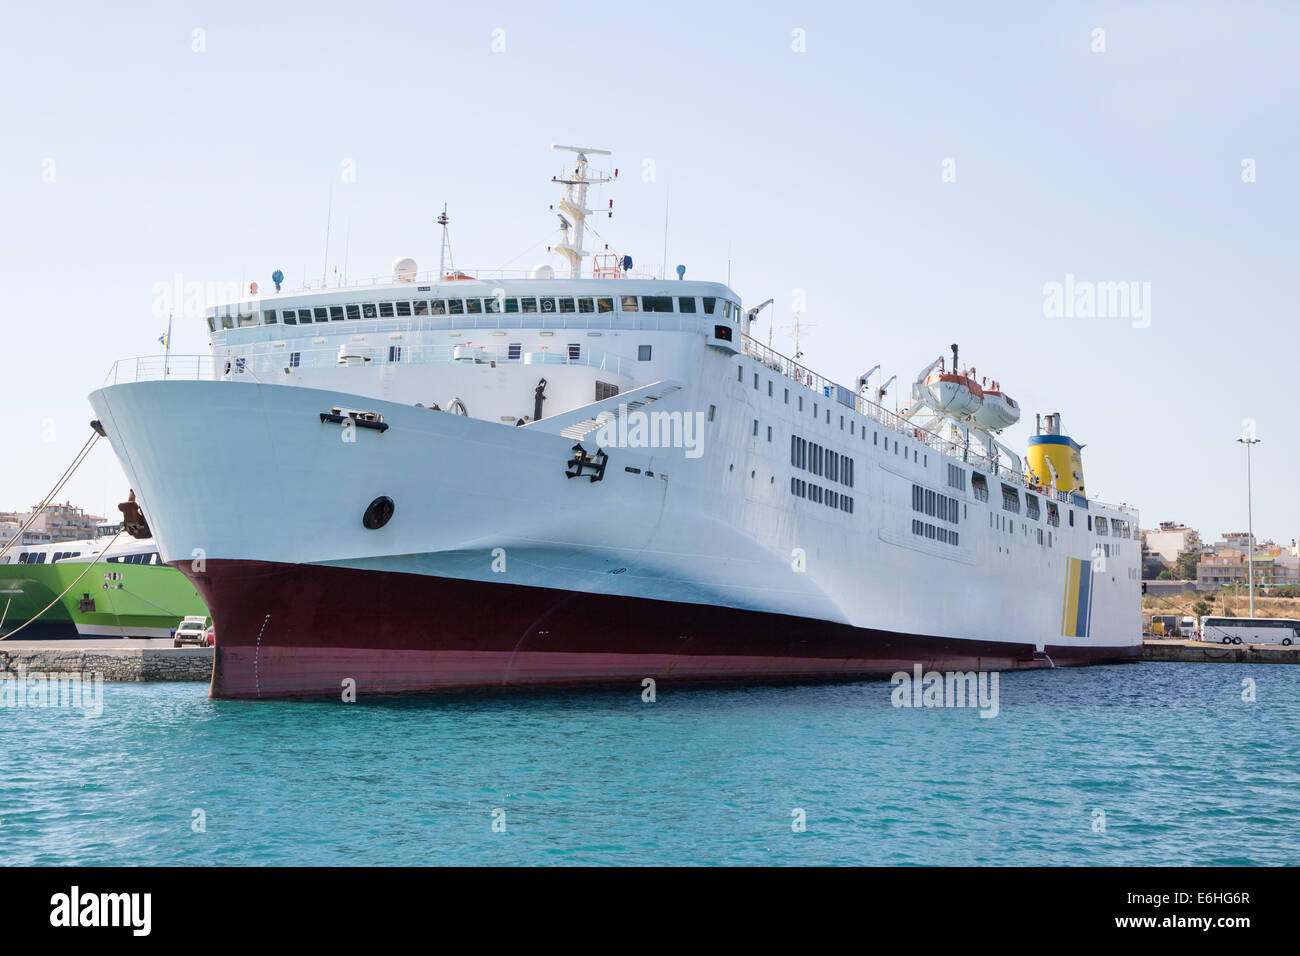 Groß und große Fähre Schiff oder Ladung Schiff im Hafen mit blauem Himmel. Stockfoto